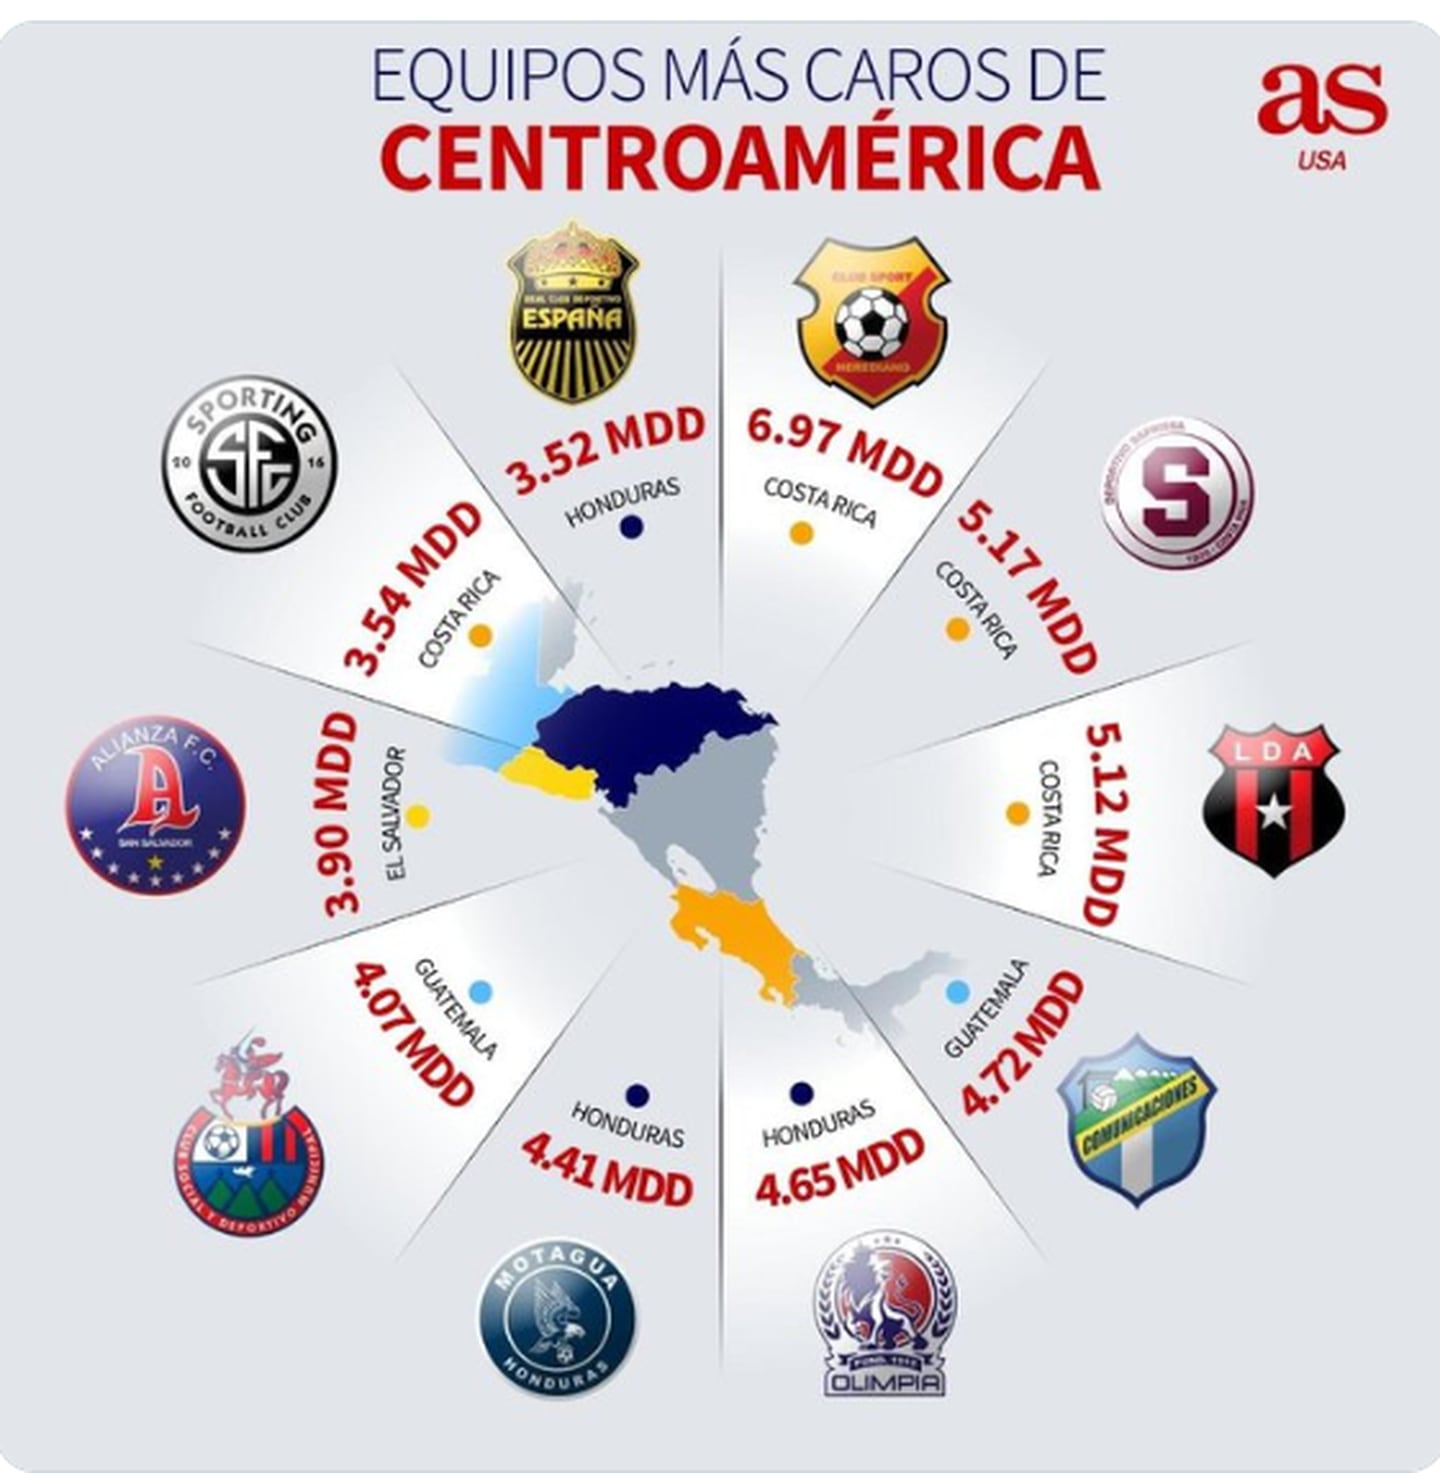 Clubes más caros de Centroamérica